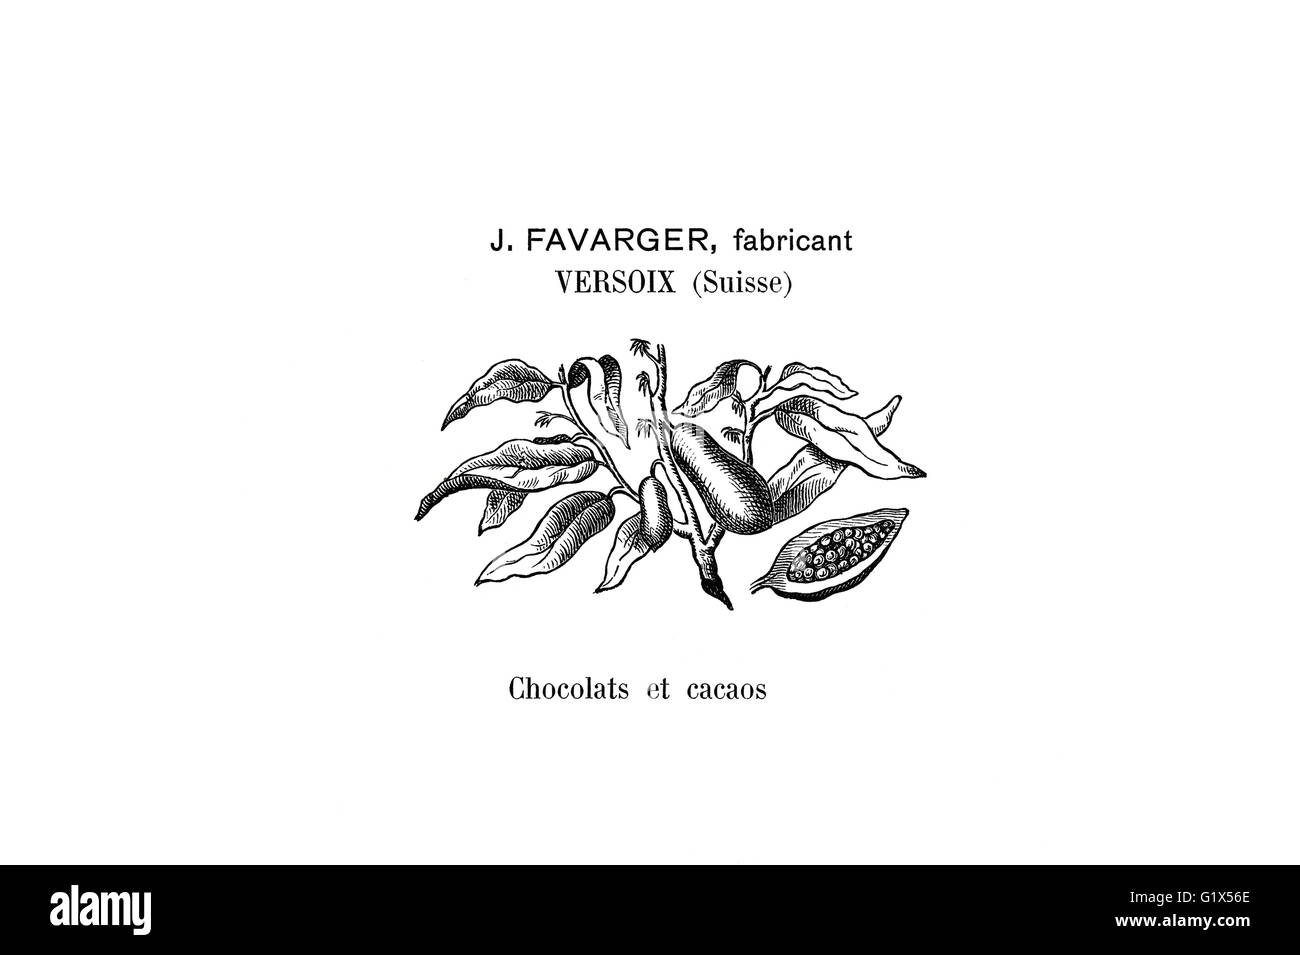 Marchio storico del cioccolato svizzero Favrager produttore dal 1901 Foto Stock